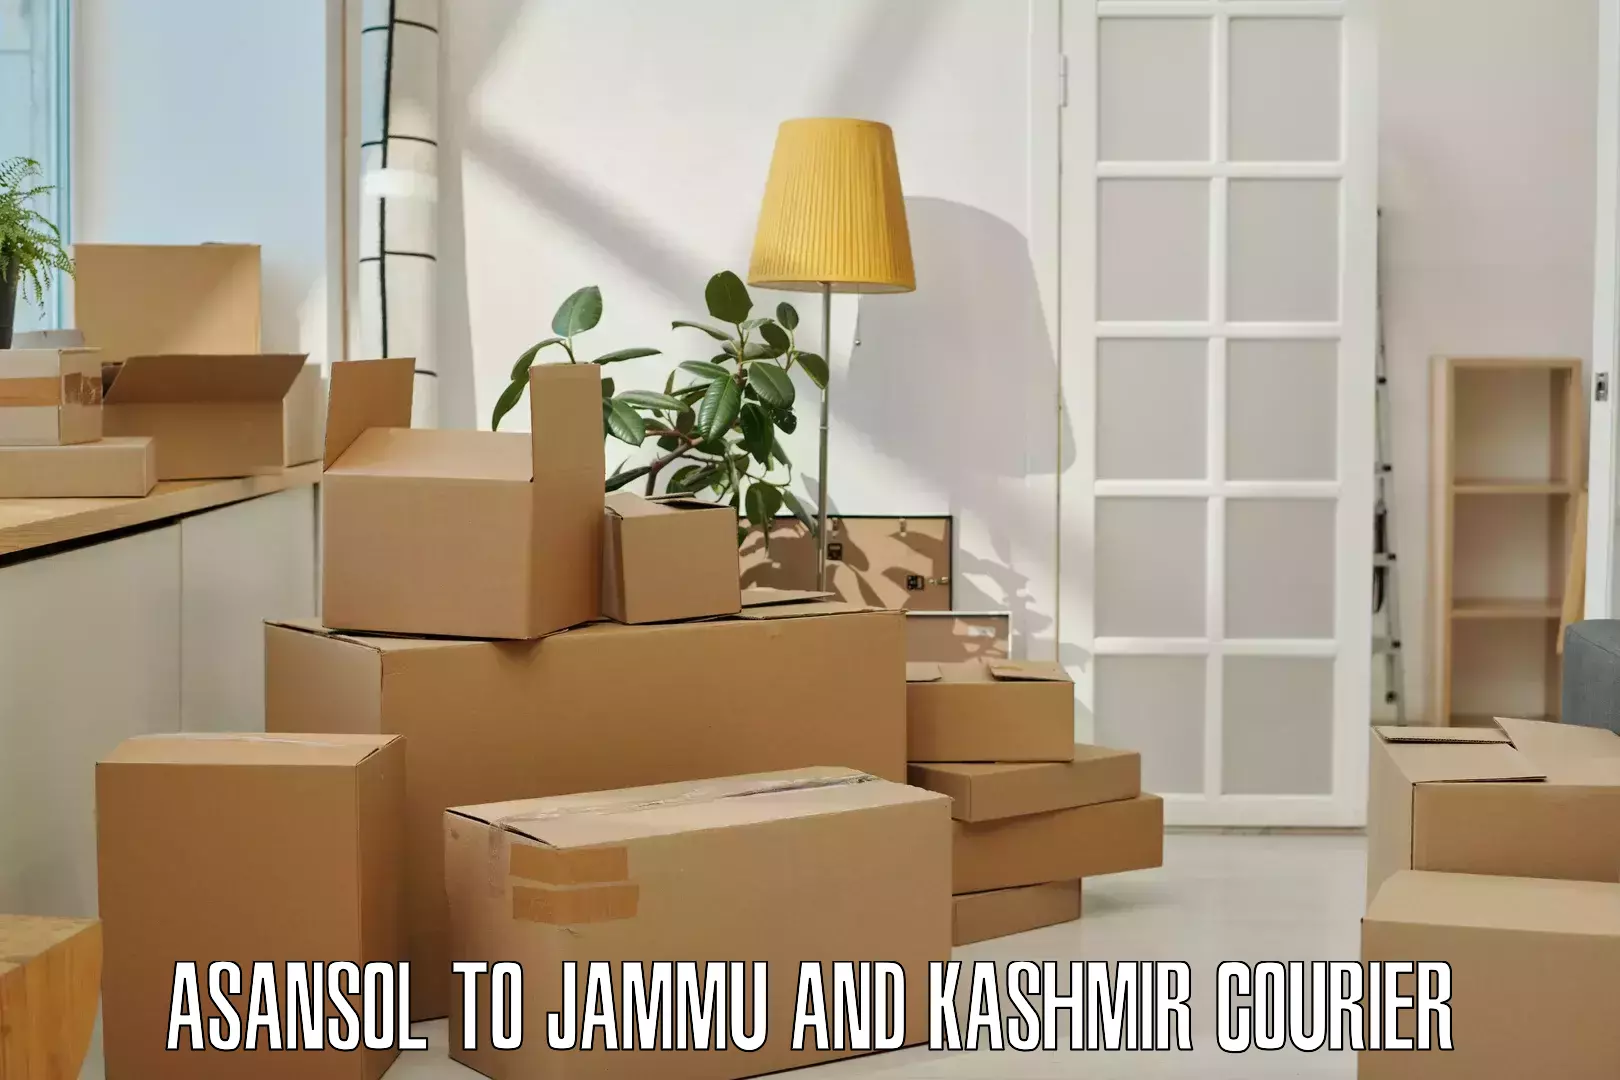 Courier service comparison Asansol to Kishtwar